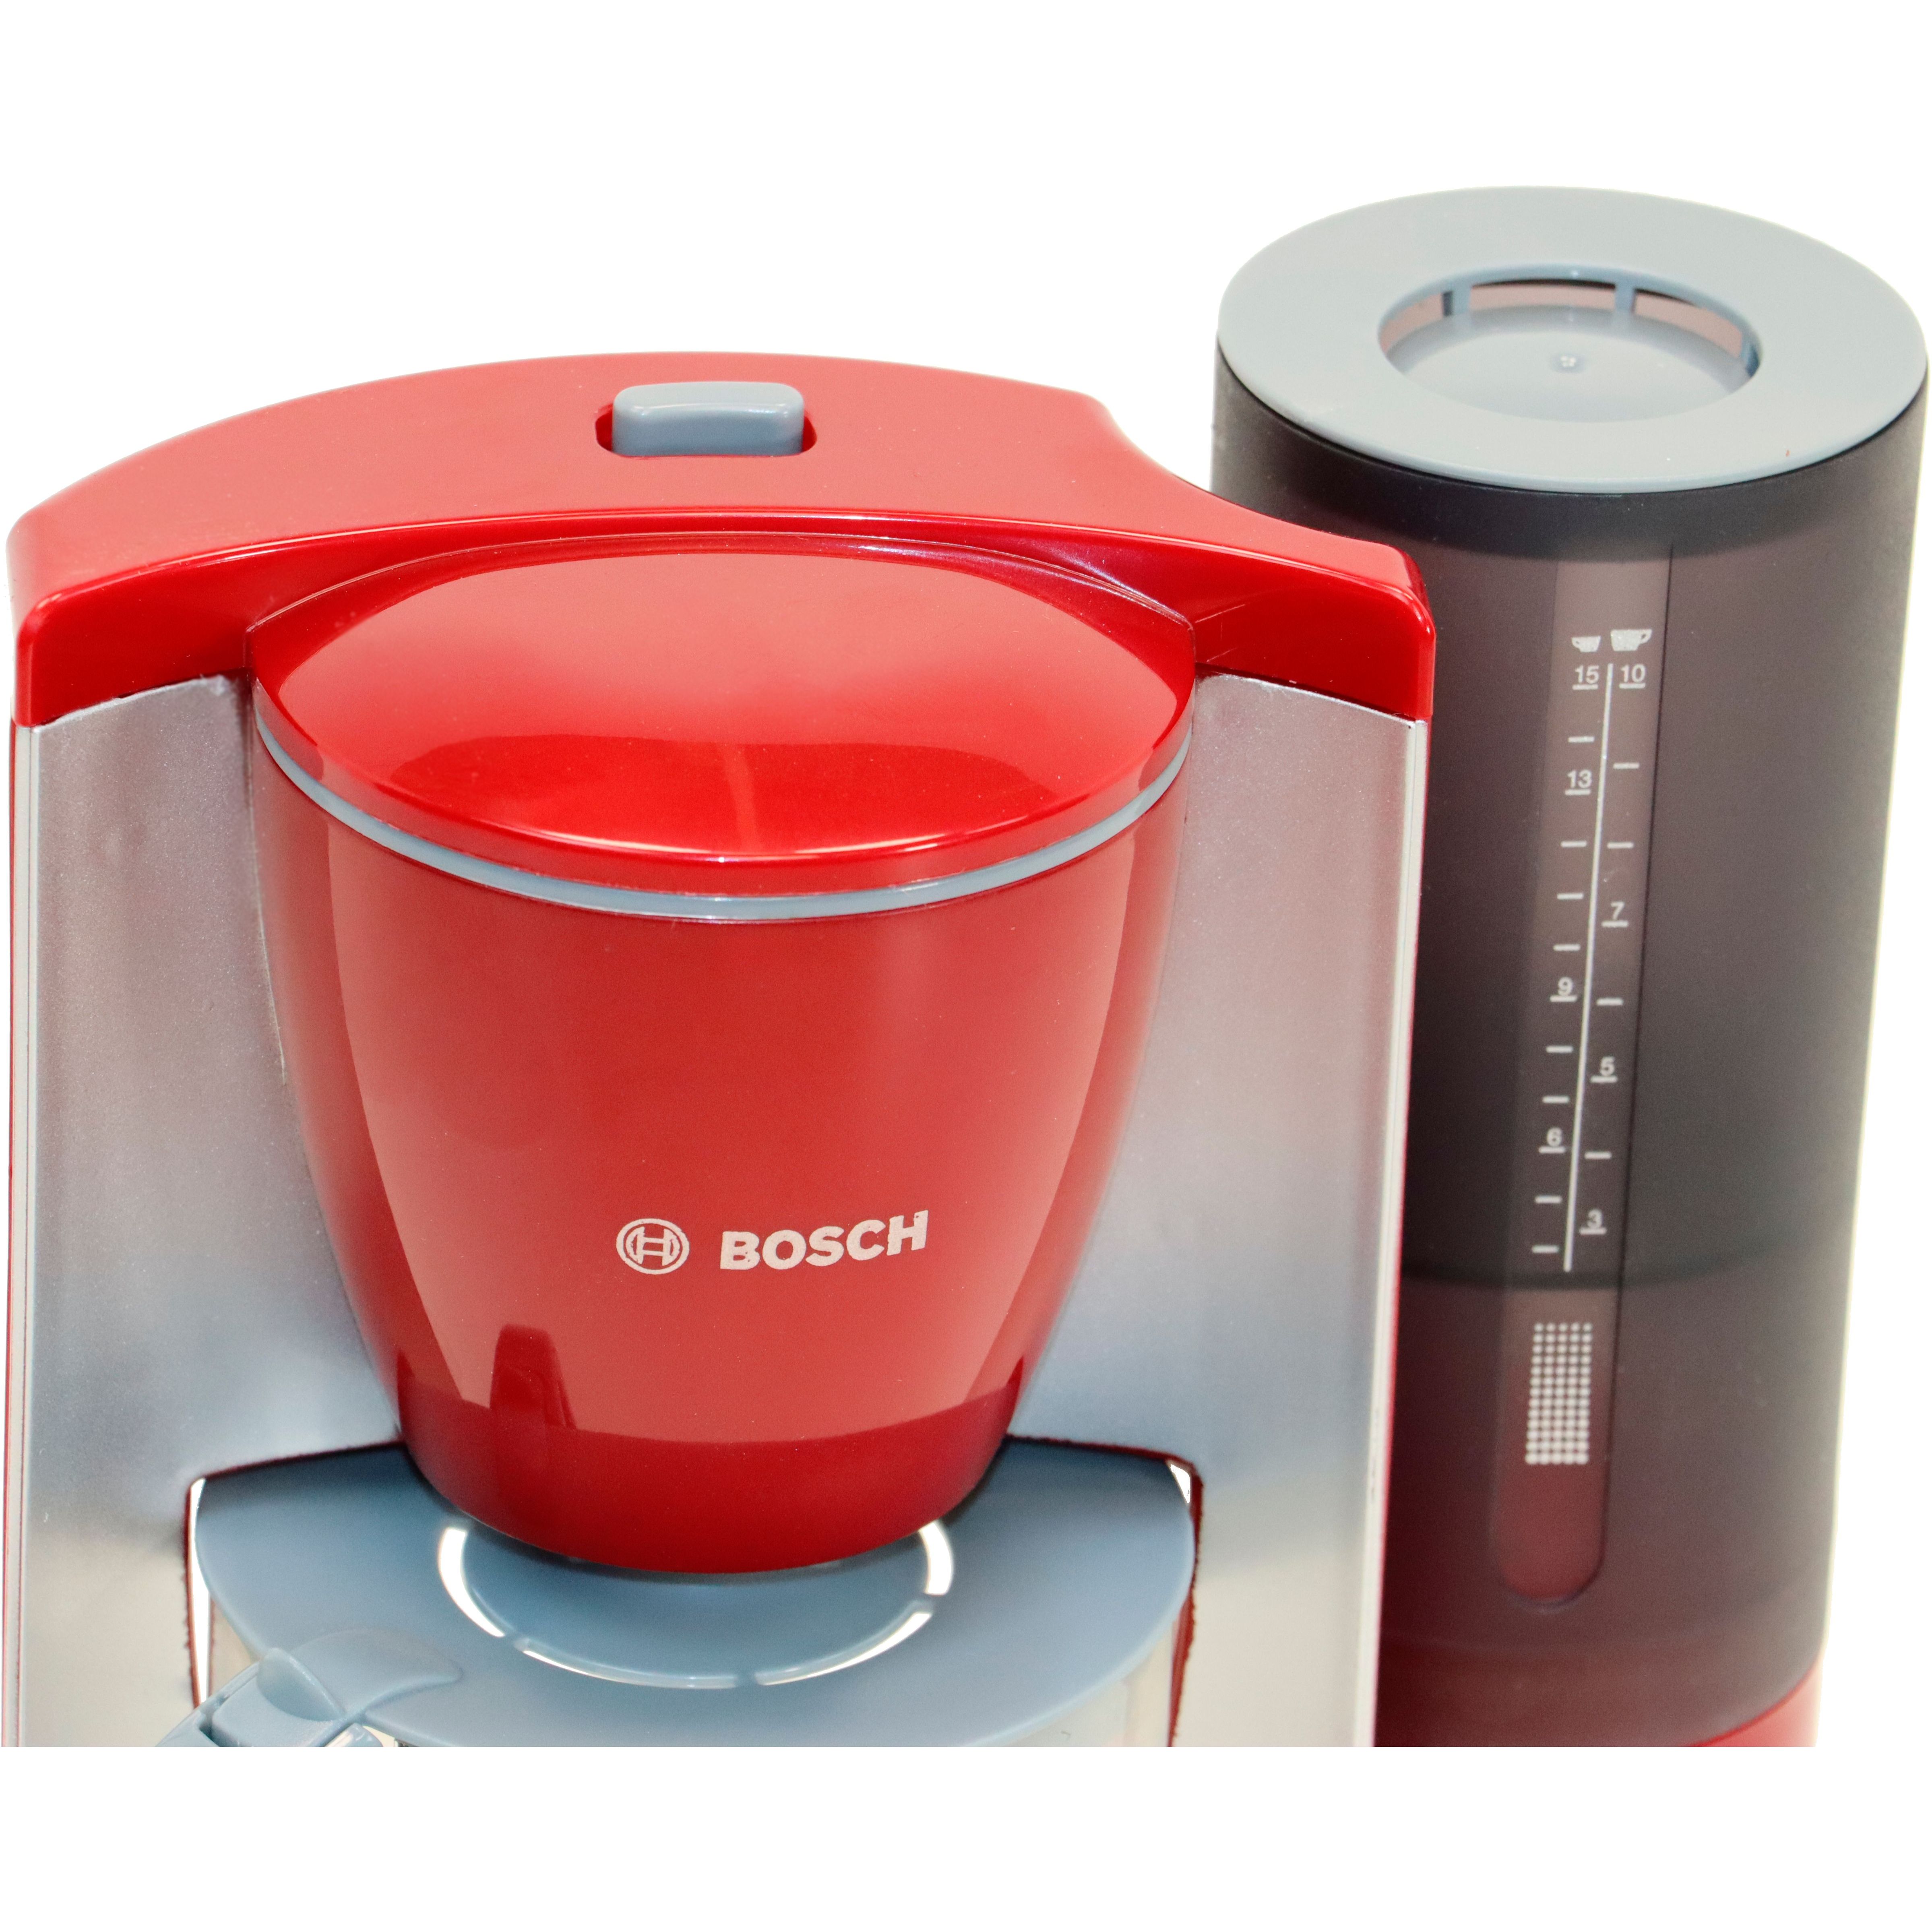 Игрушечный набор Bosch Mini кофеварка с резервуаром для воды (9577) - фото 3